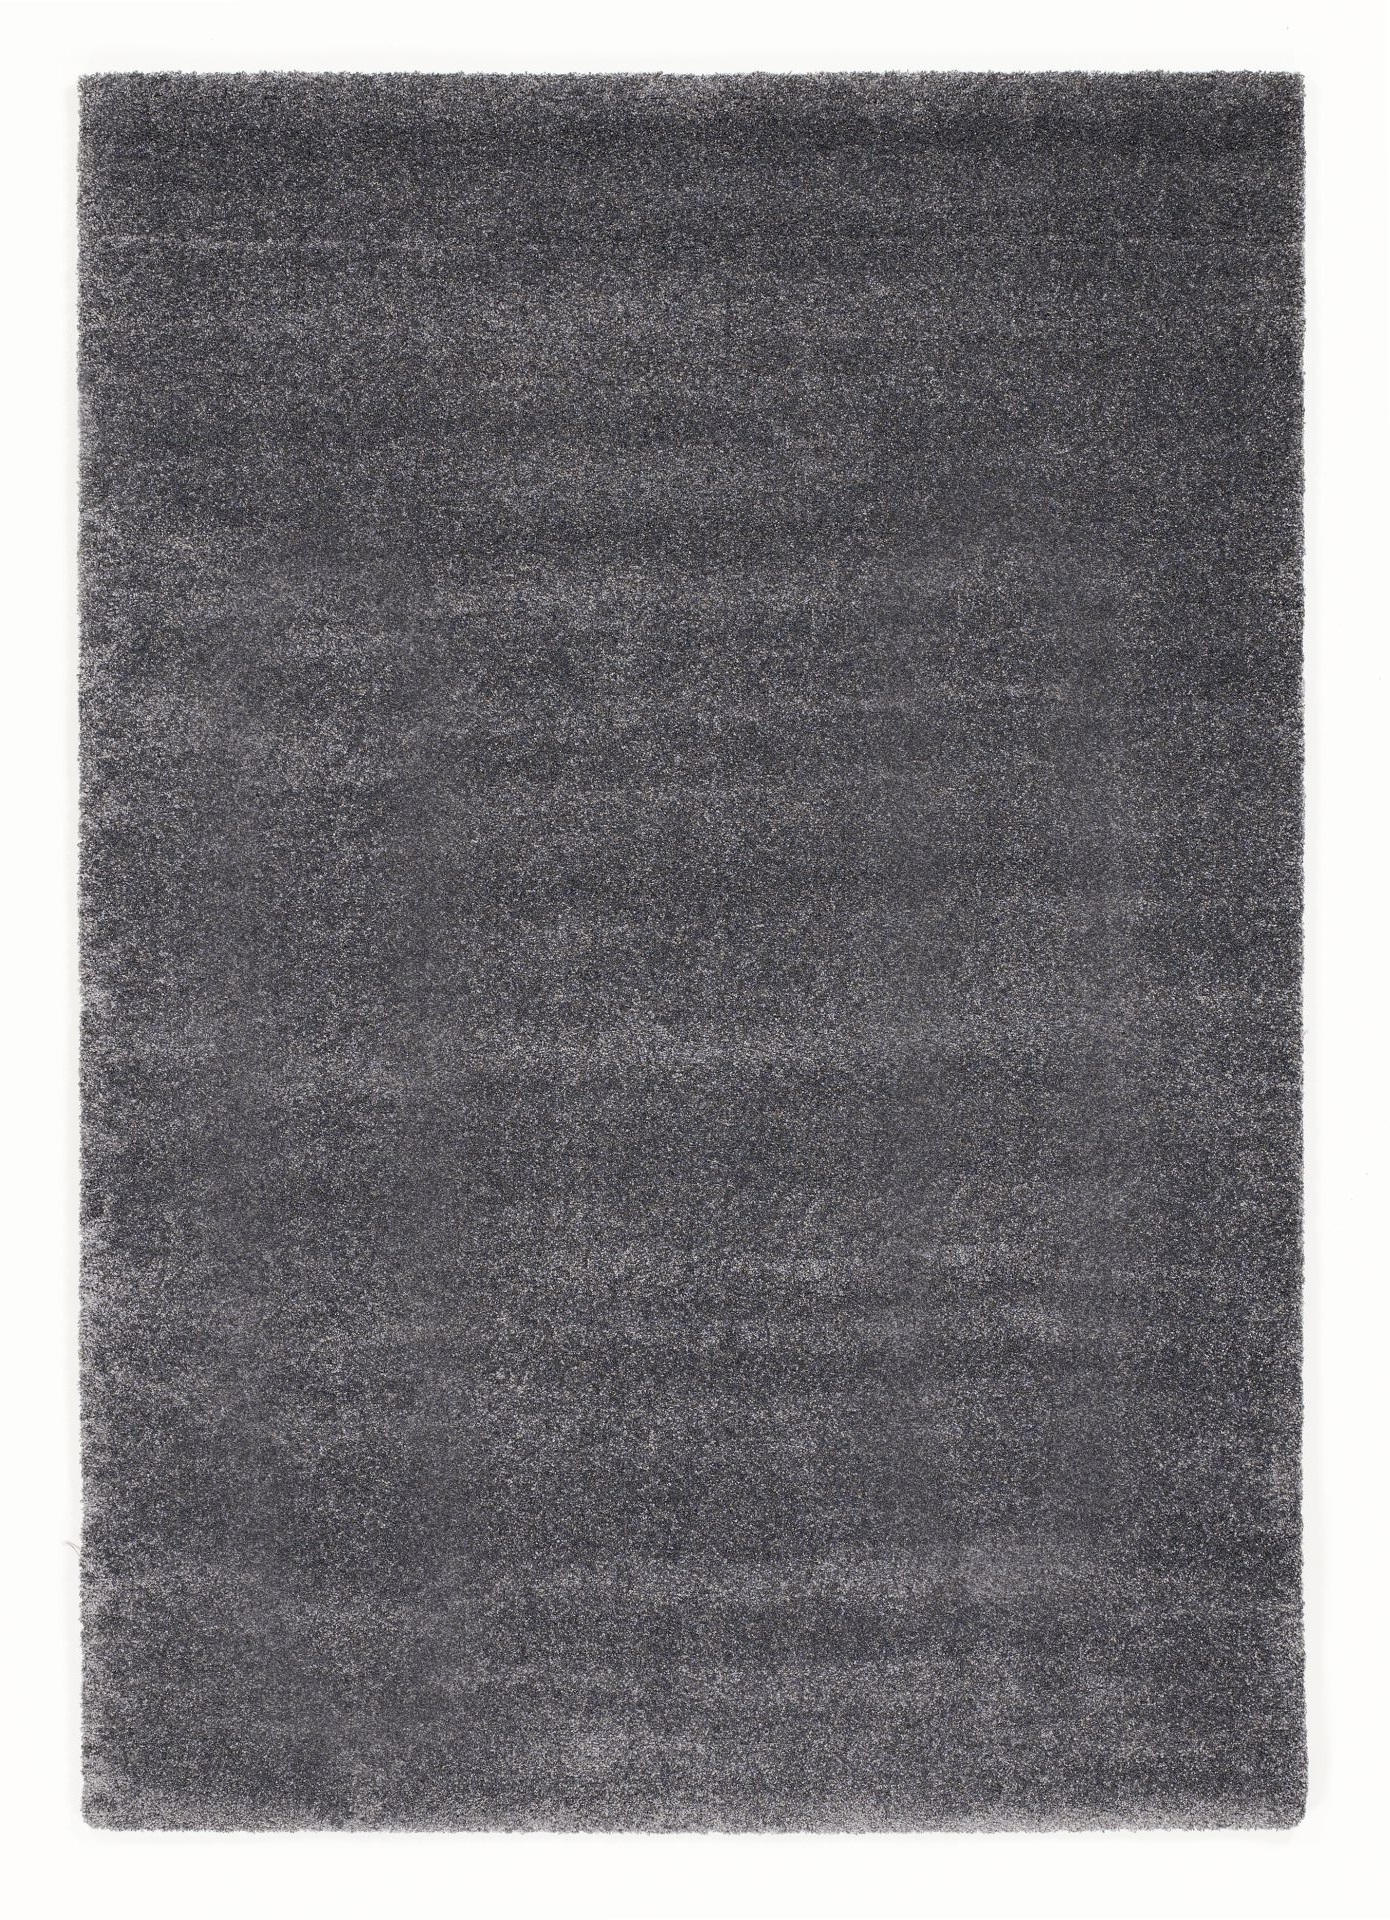 HOCHFLORTEPPICH 160/230 cm Bellevue  - Dunkelgrau, Basics, Textil (160/230cm) - Novel